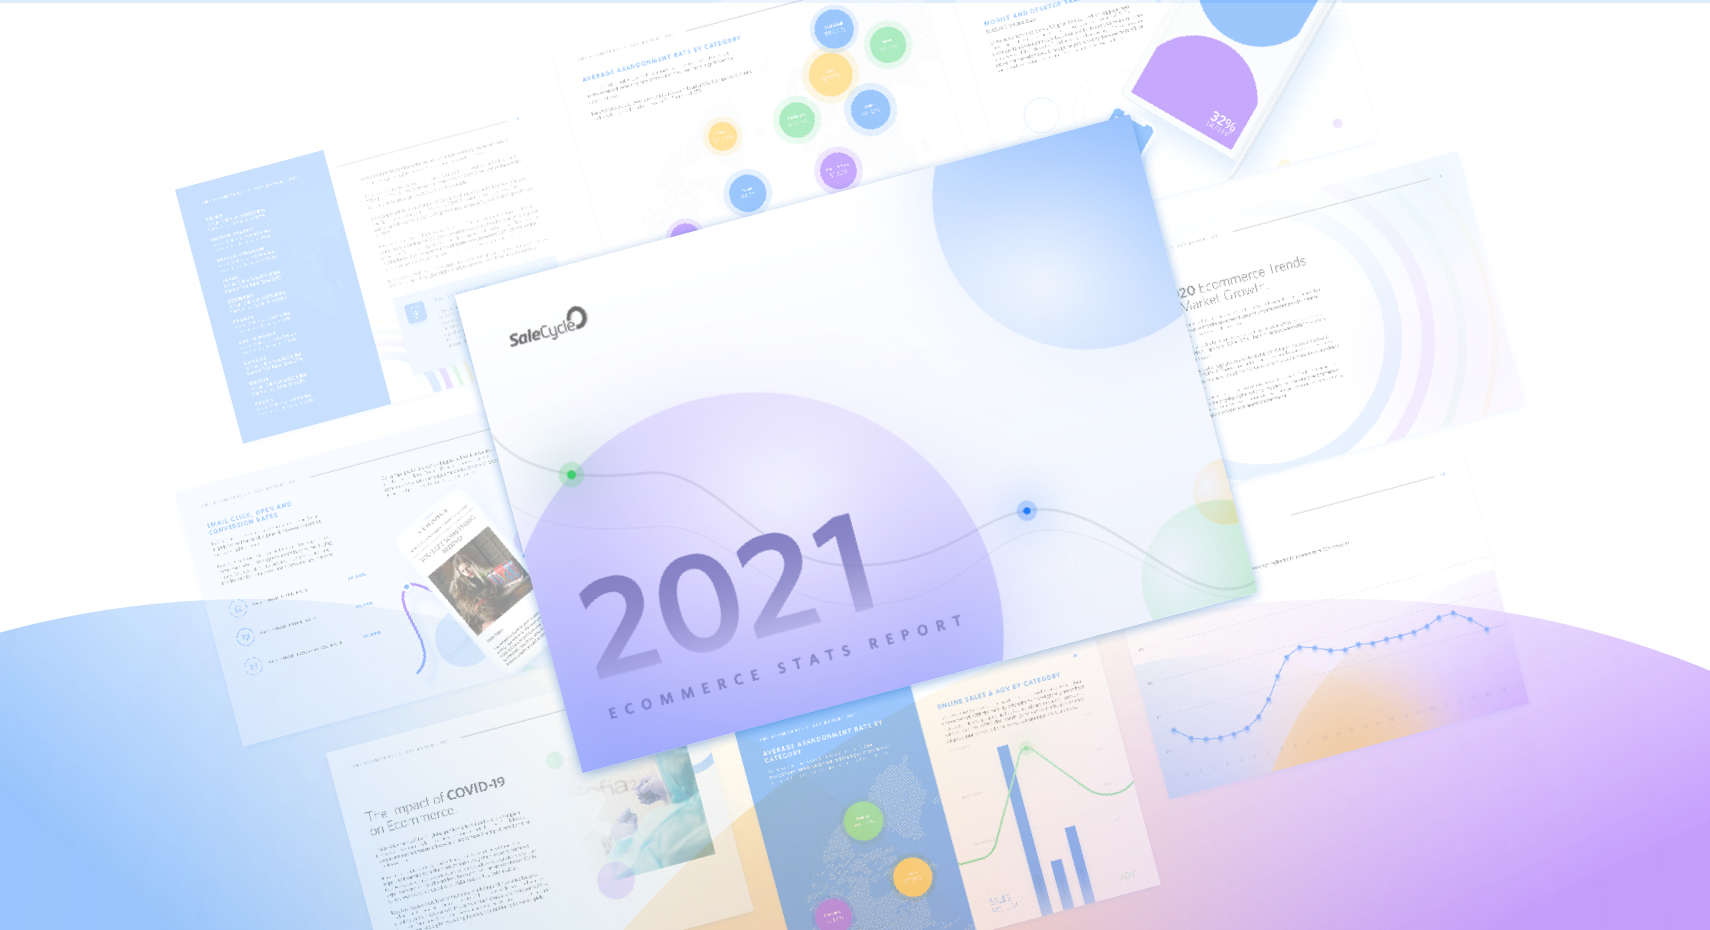 Rapporto sulle statistiche dell’e-commerce 2020